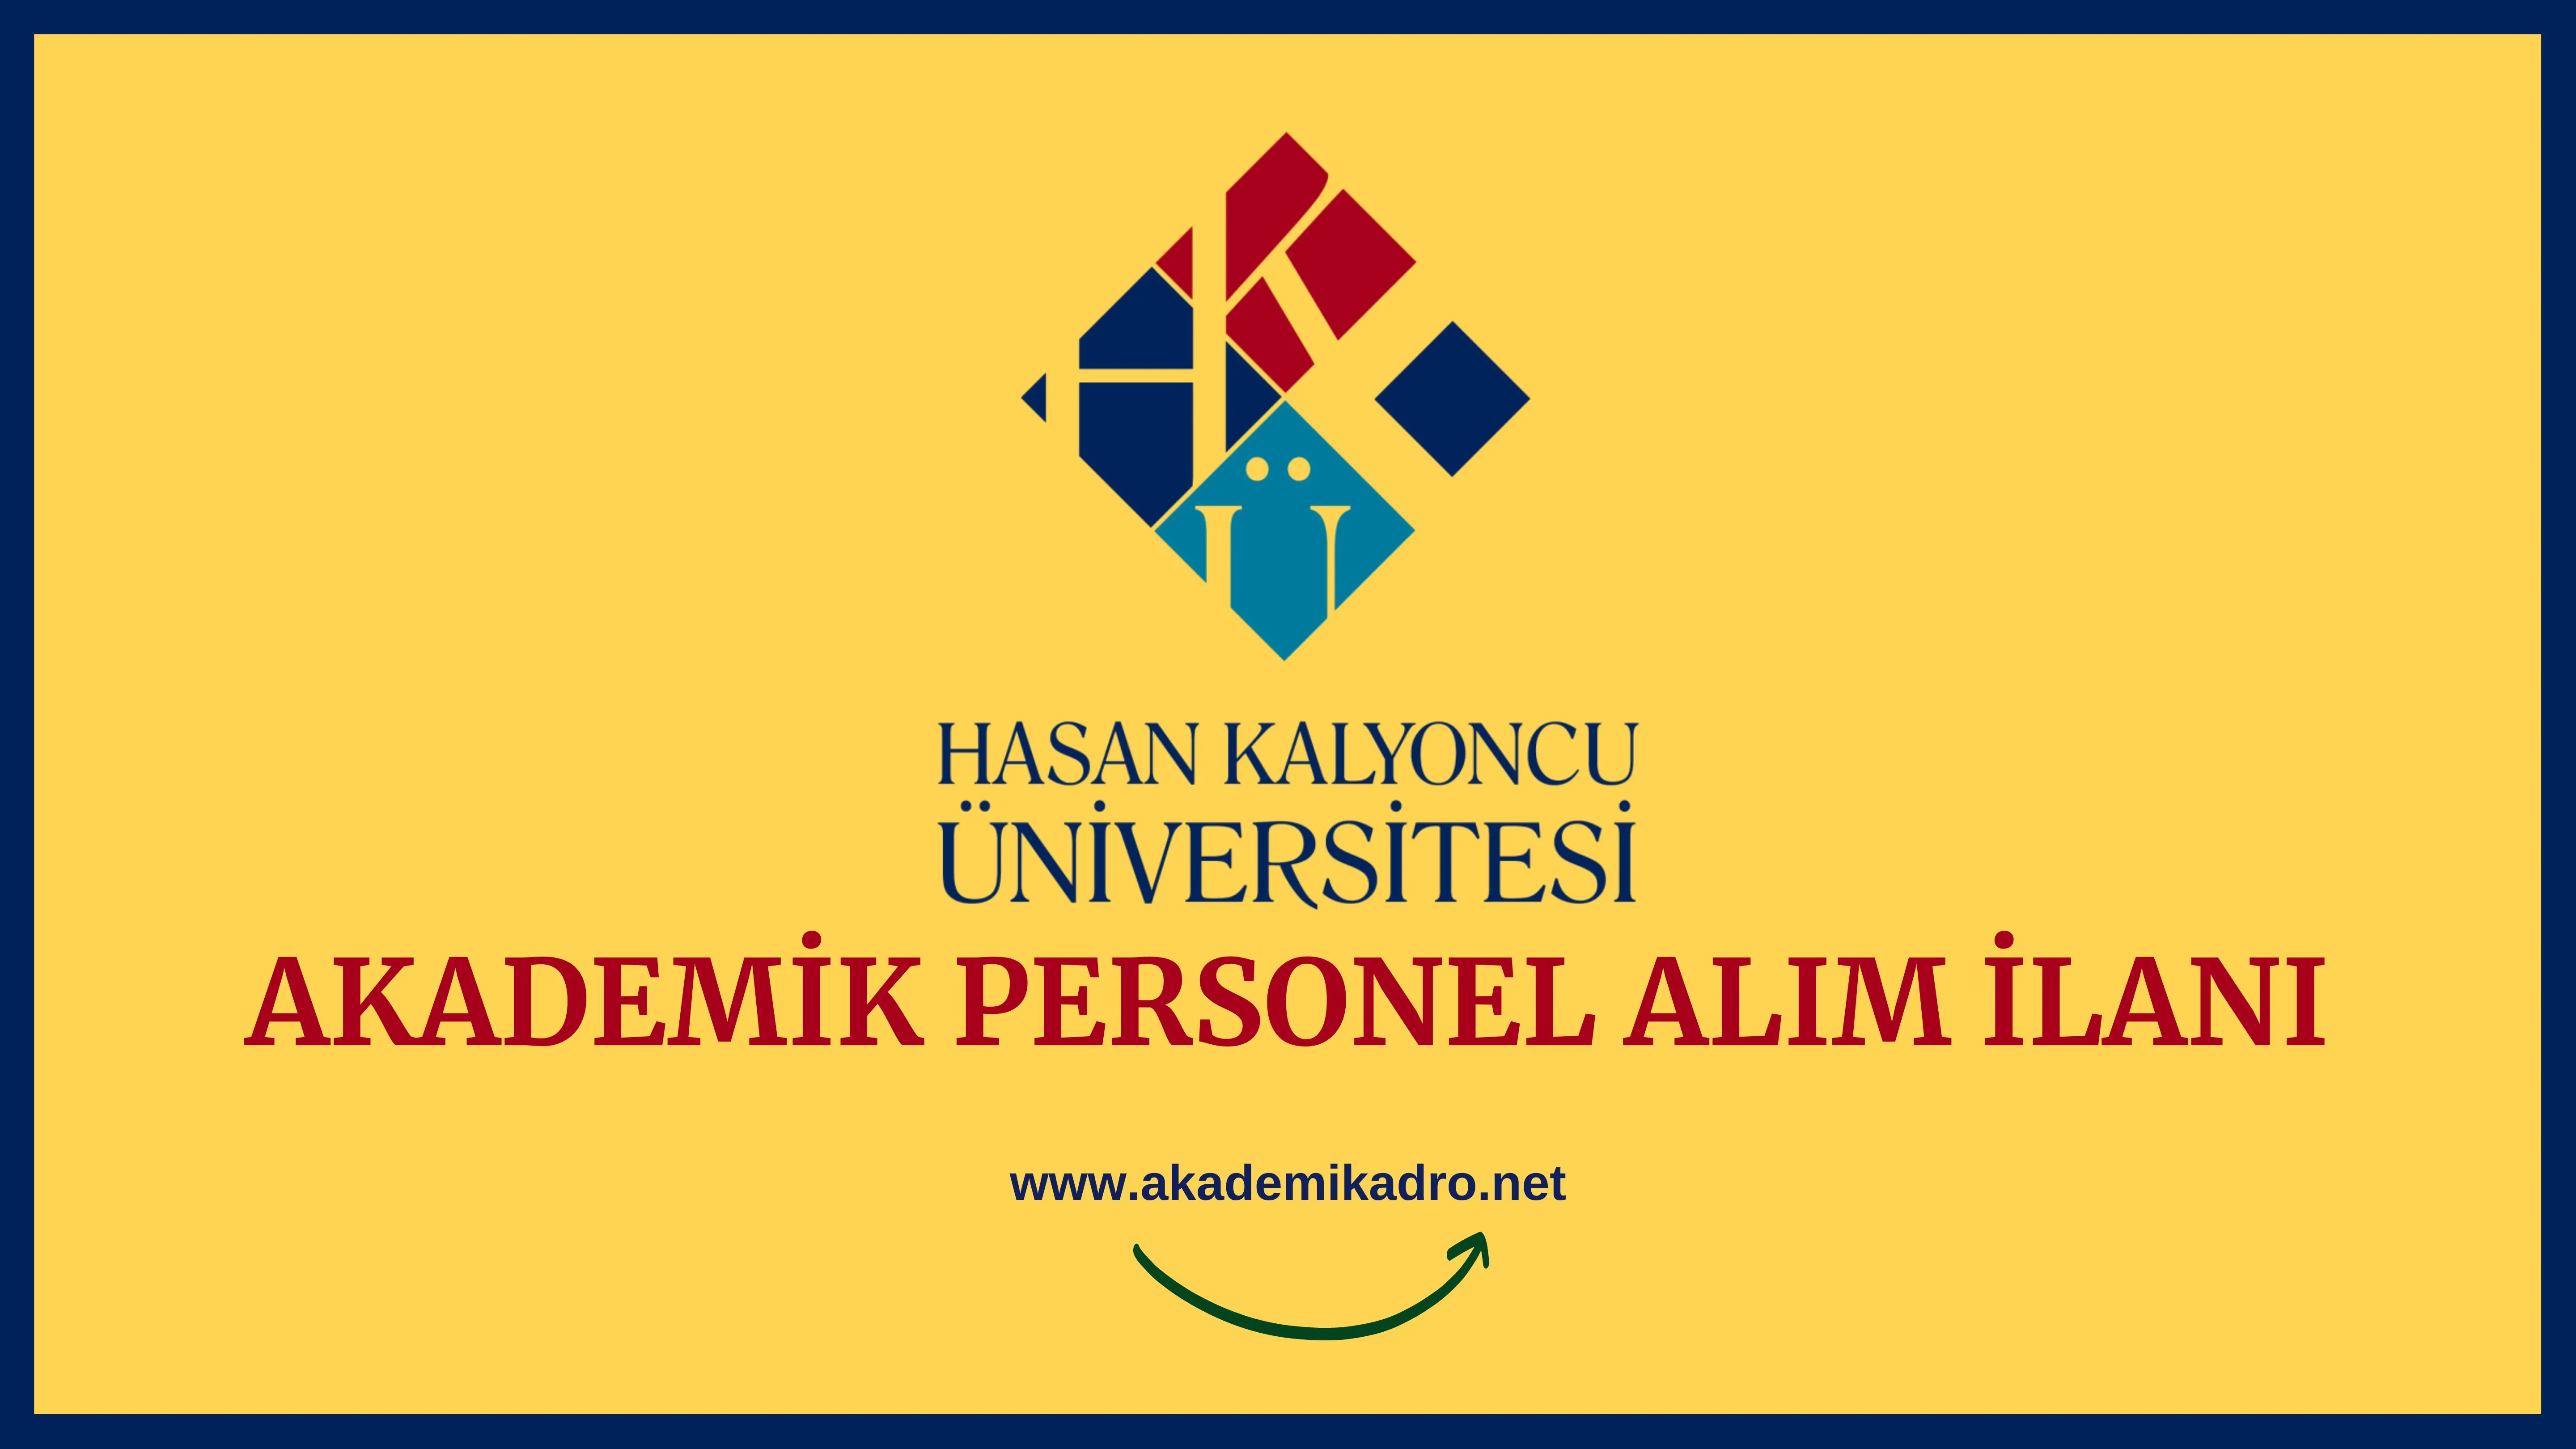 Hasan Kalyoncu Üniversitesi birçok alandan 29 Öğretim üyesi alacak. Son başvuru tarihi 05 Haziran 2023.